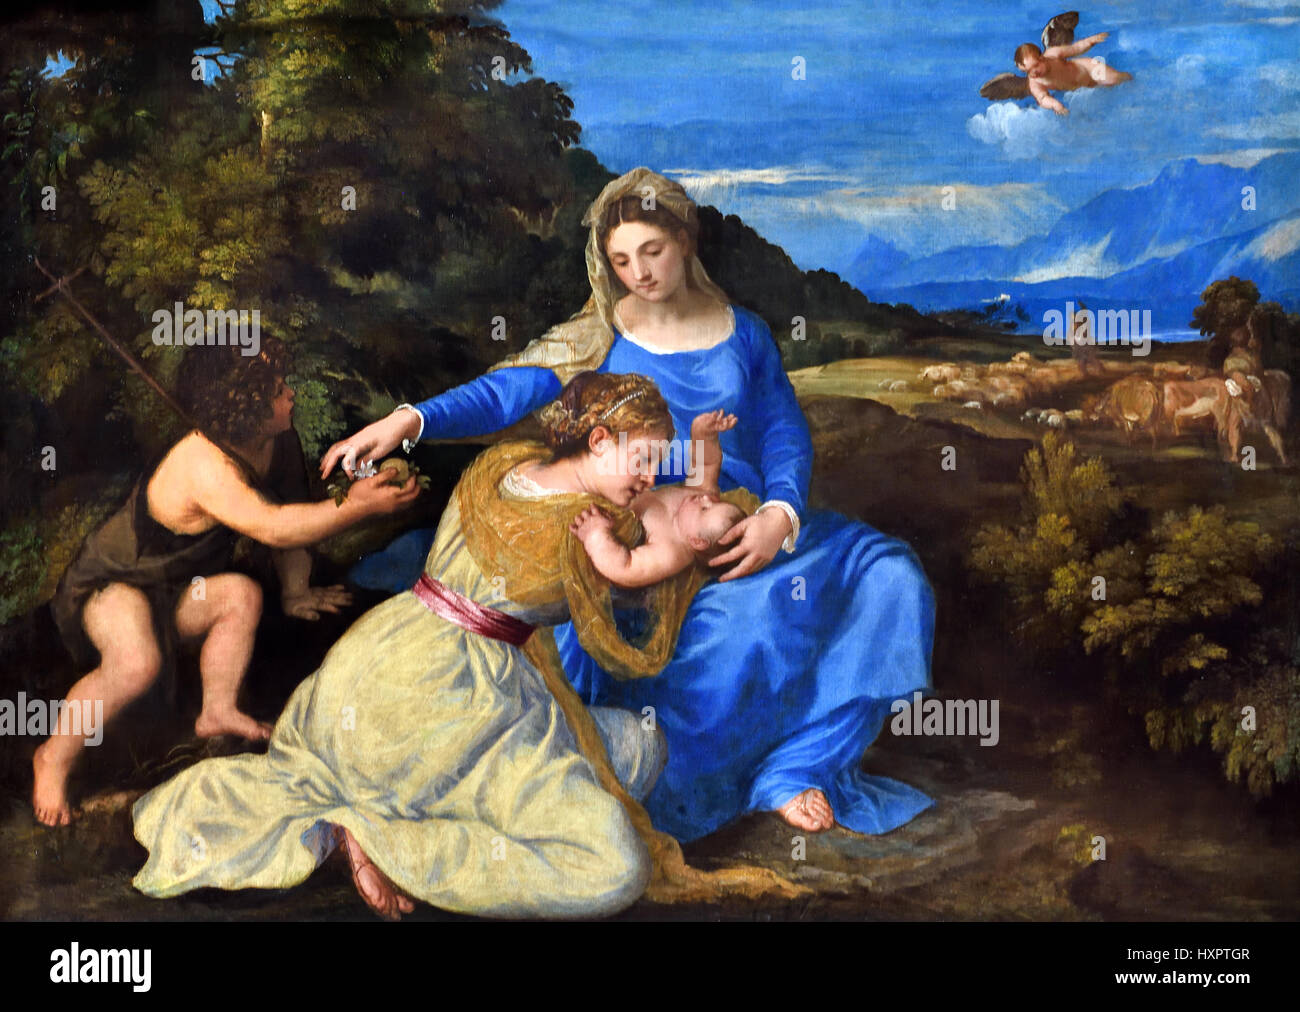 Le Madonna Aldobrandini 1532, Berthe Morisot ou Tiziano Vecellio1490 - 1576), peintre italien Titien 16e siècle école Vénitienne Venise Italie Banque D'Images